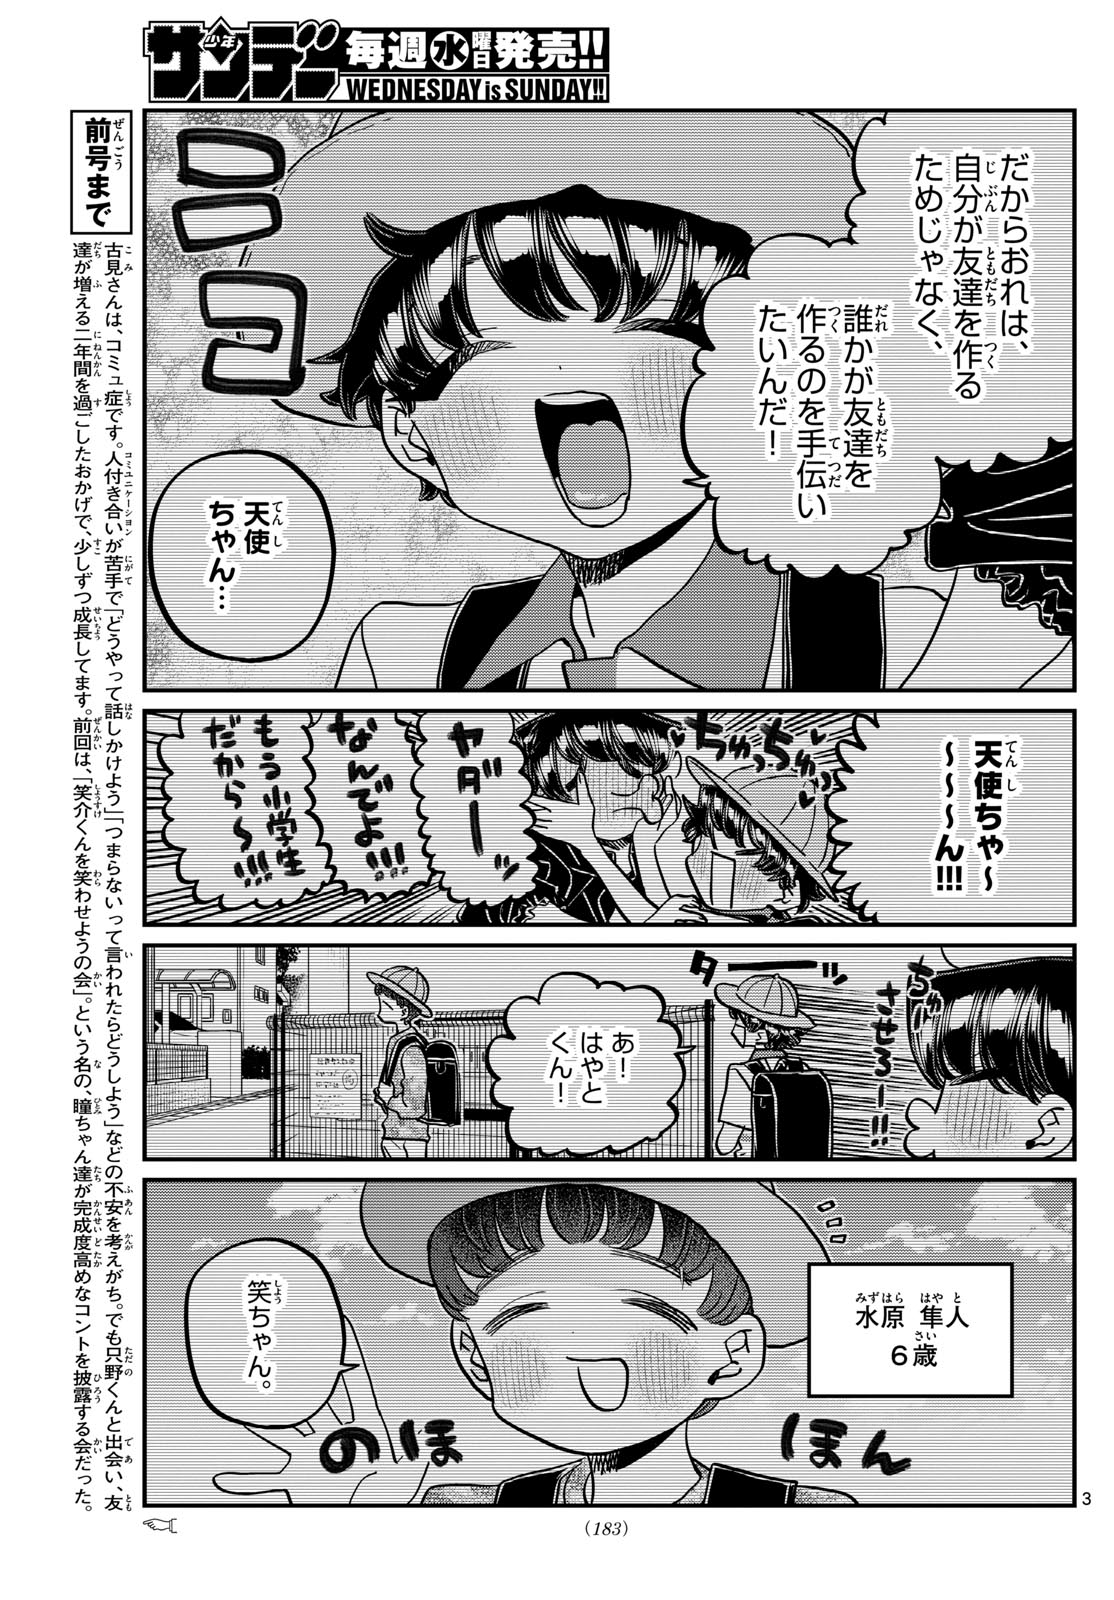 Komi-san wa Komyushou Desu - Chapter 461 - Page 3